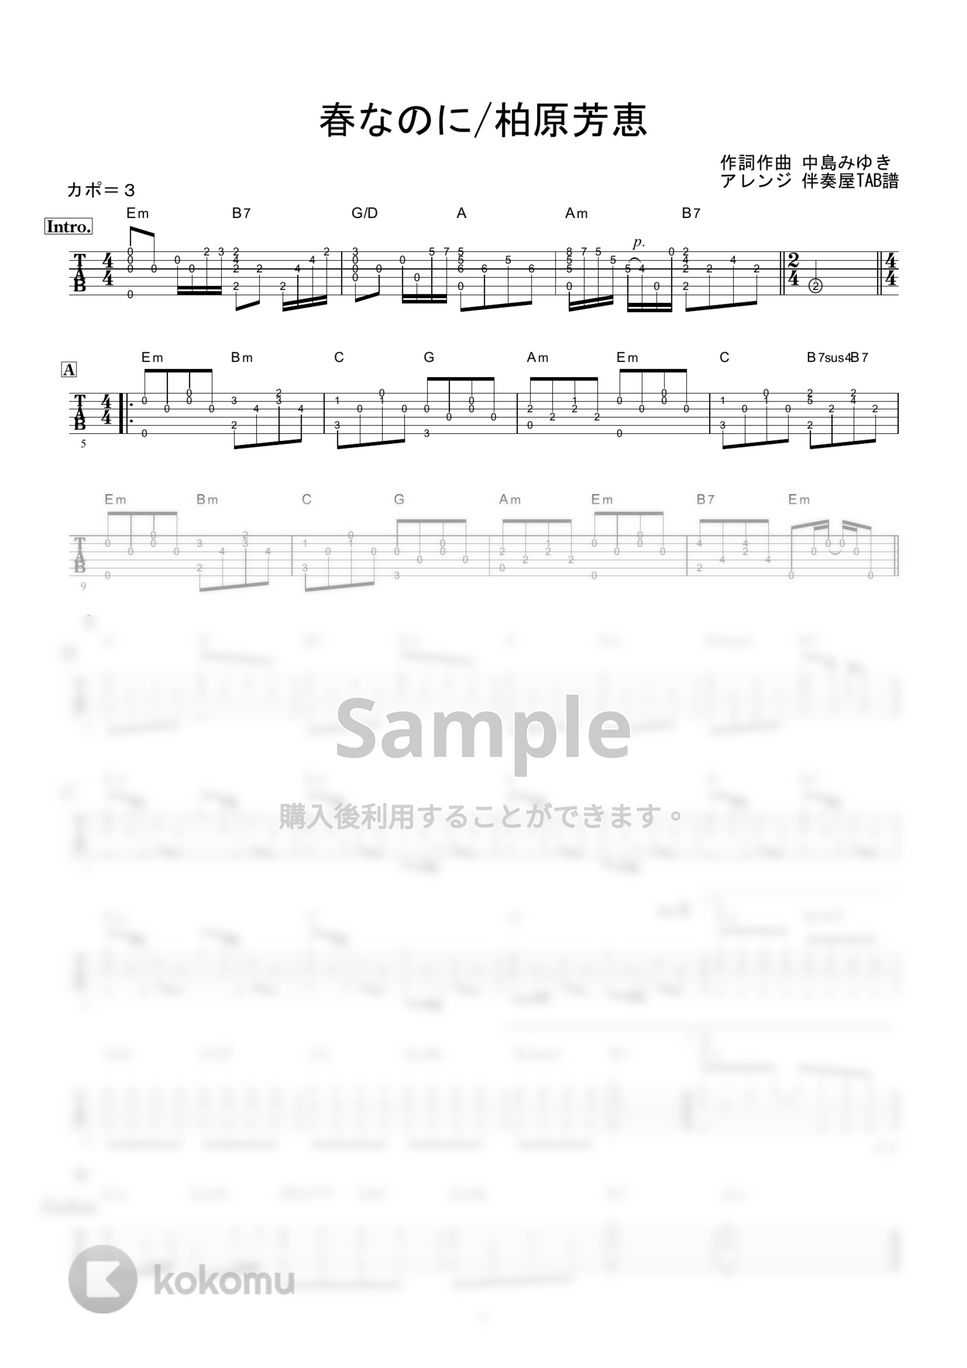 柏原芳恵 - 春なのに (ギター伴奏/イントロ・間奏ソロギター) by 伴奏屋TAB譜